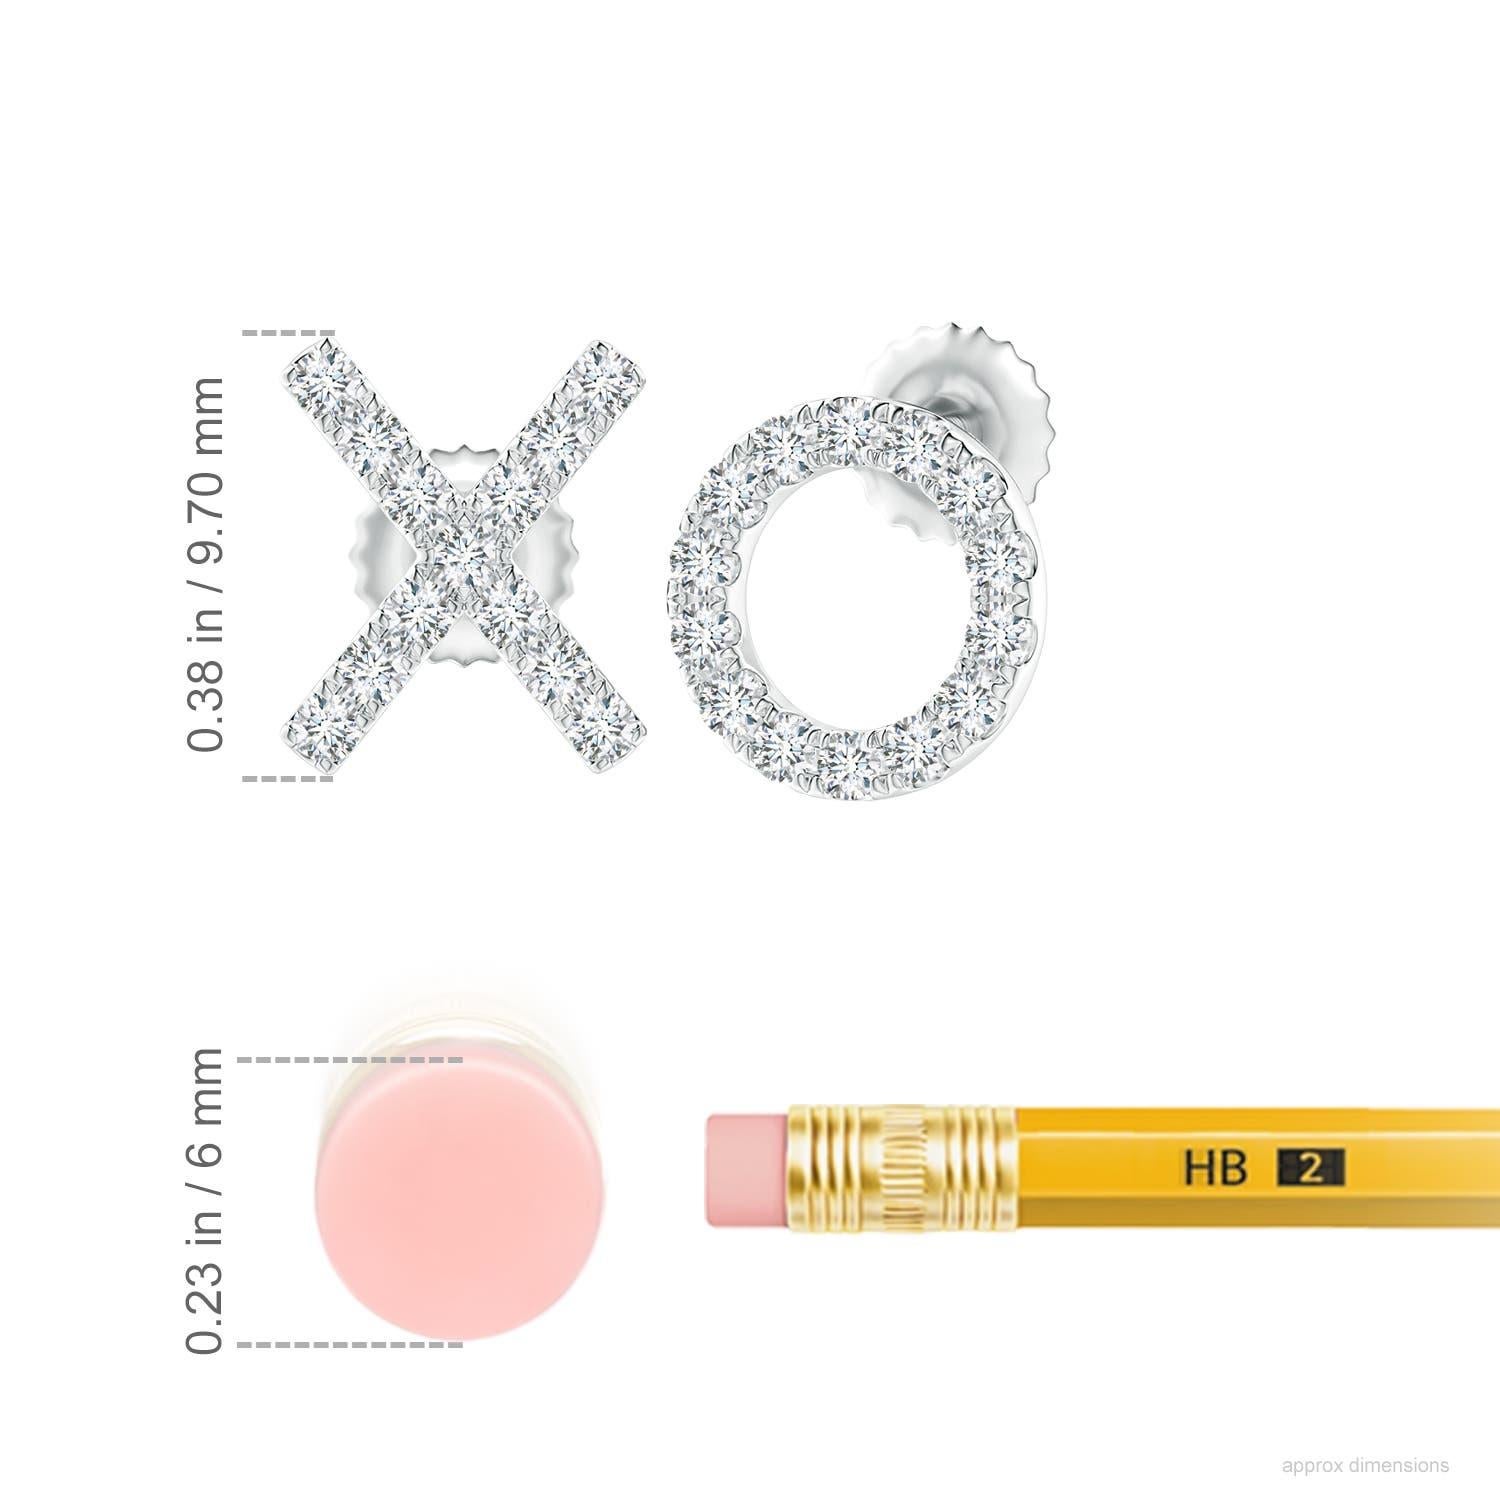 Die XO-Ohrstecker aus 14 Karat Weißgold sind einfach faszinierend. Funkelnde runde Diamanten in einer U-Pava-Fassung schmücken das XO-Muster und verleihen diesen bezaubernden Ohrsteckern eine schillernde Note.
Der Diamant ist der Geburtsstein des